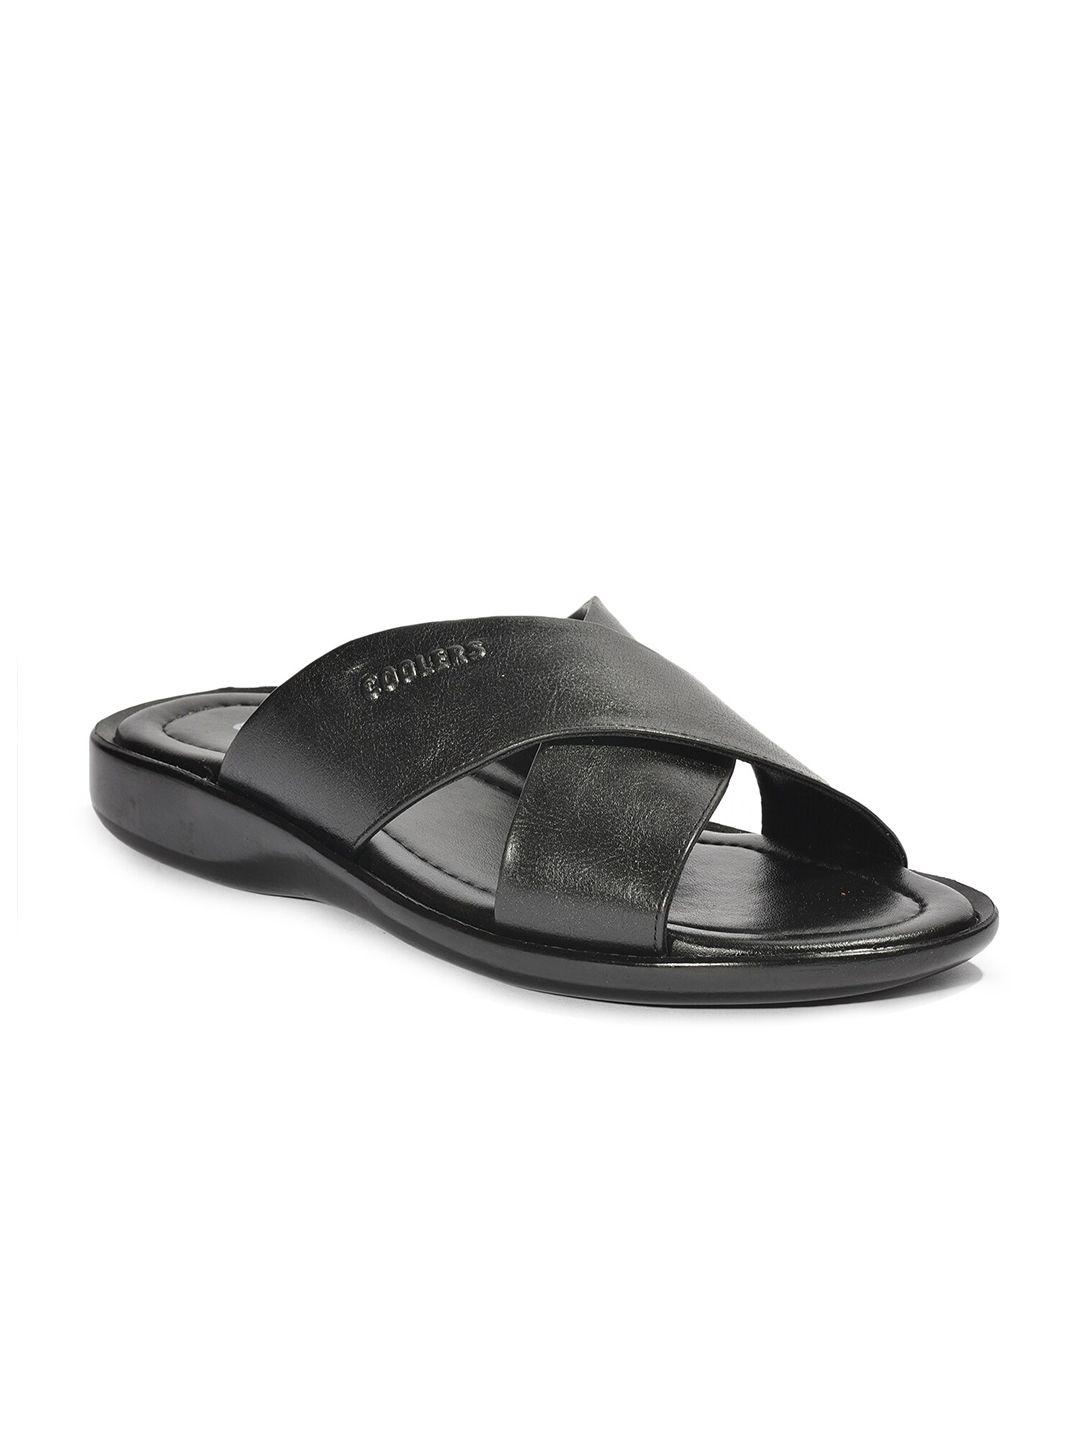 liberty men black solid comfort sandals